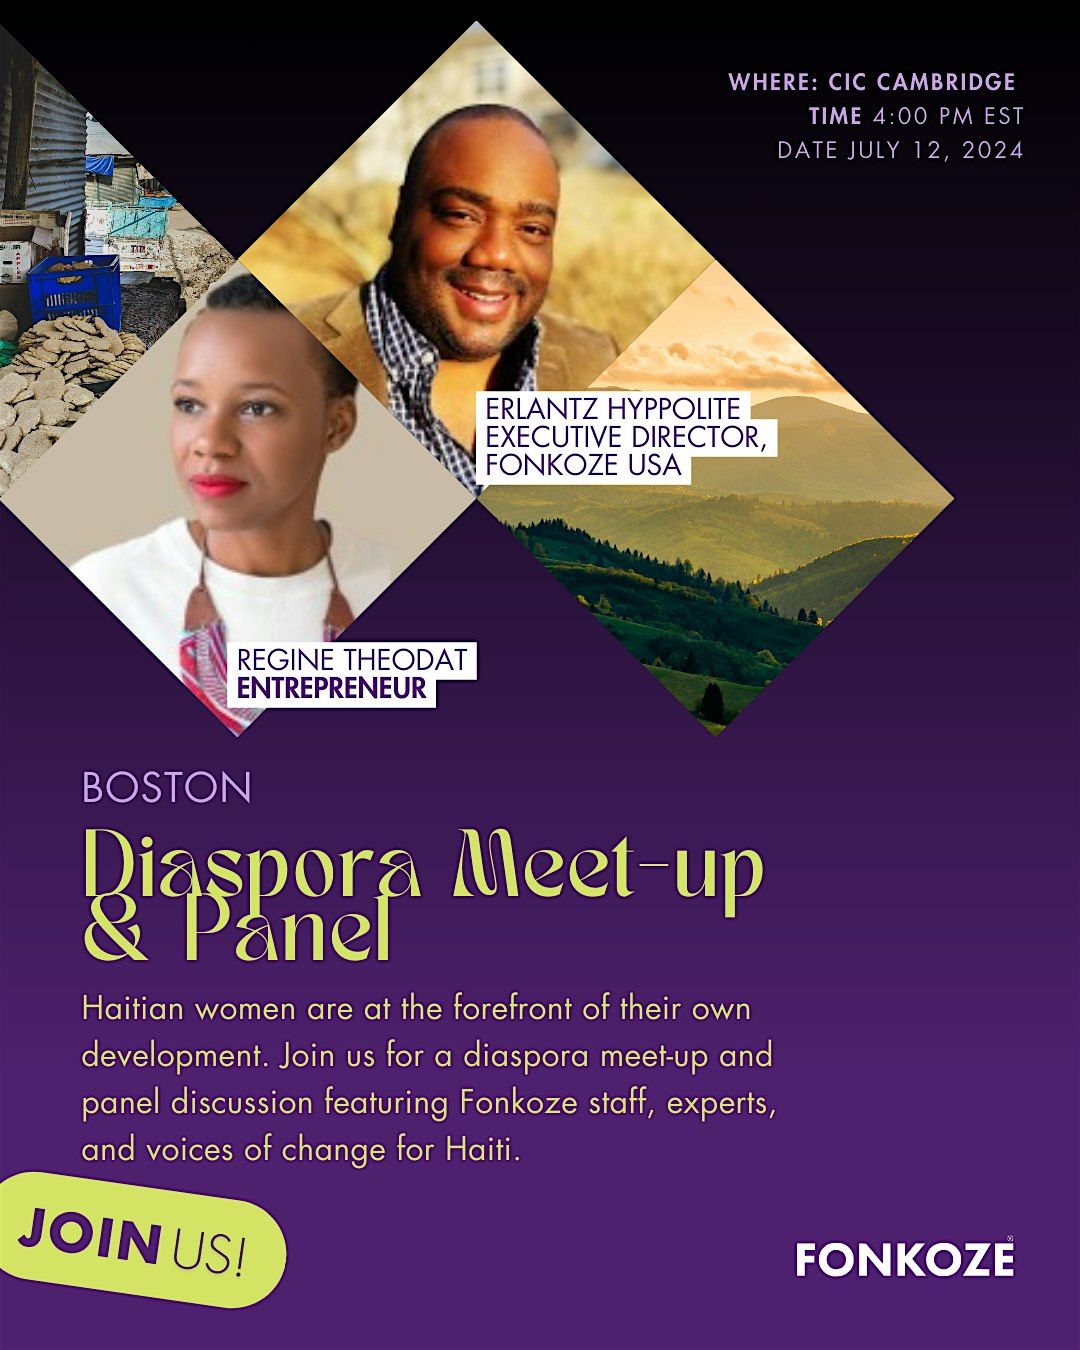 Haitian Diaspora Panel Discussion & Meet-Up